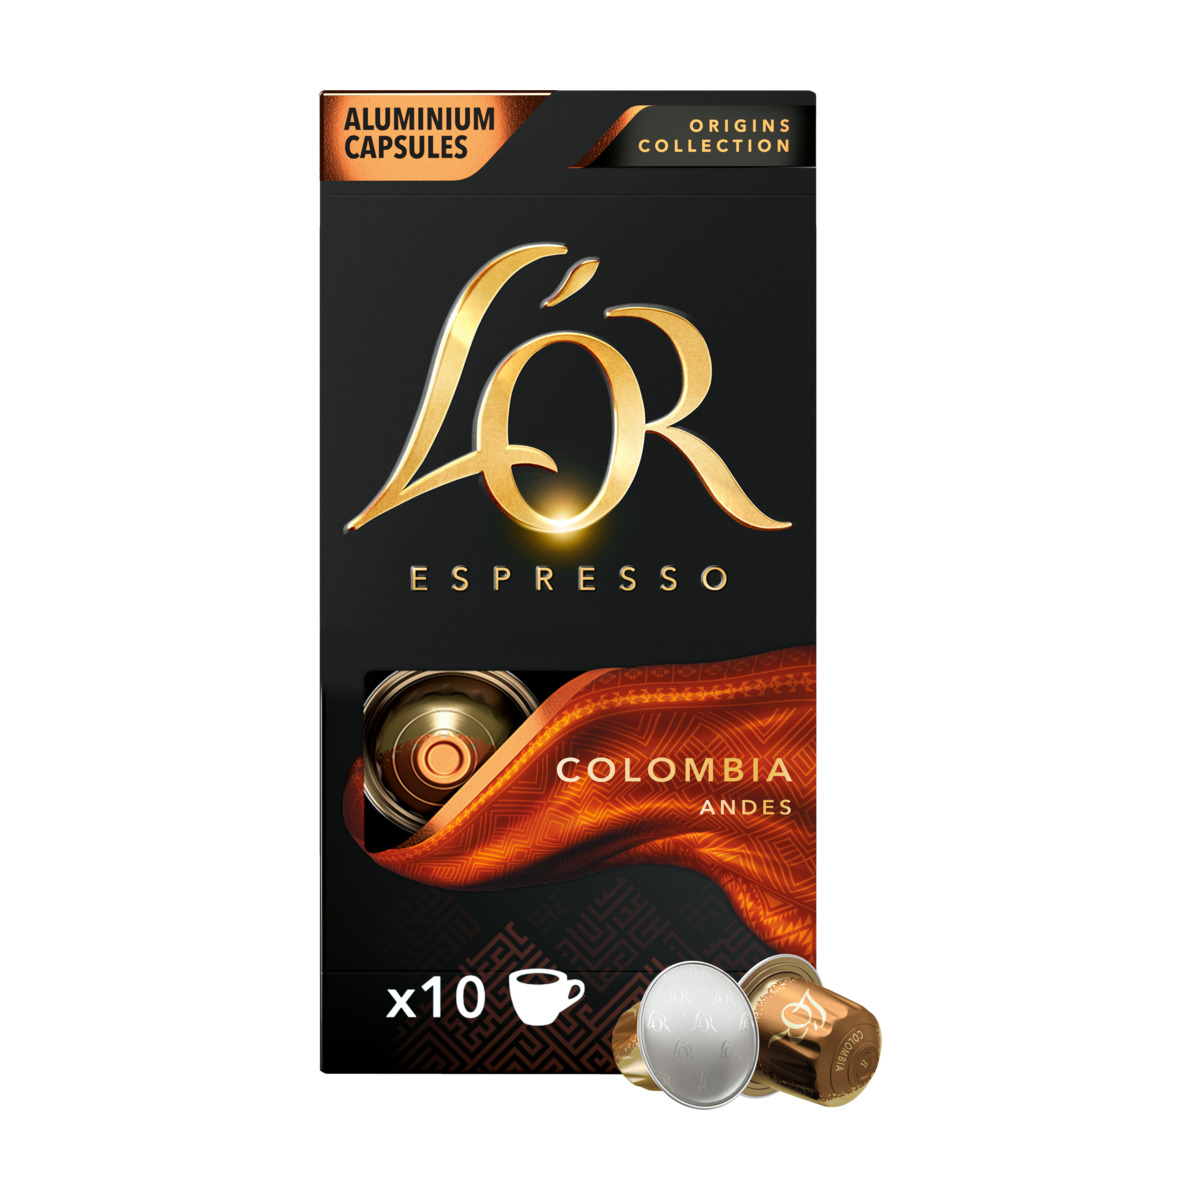 L'Or espresso Colombia kaffekapsler 10 stk